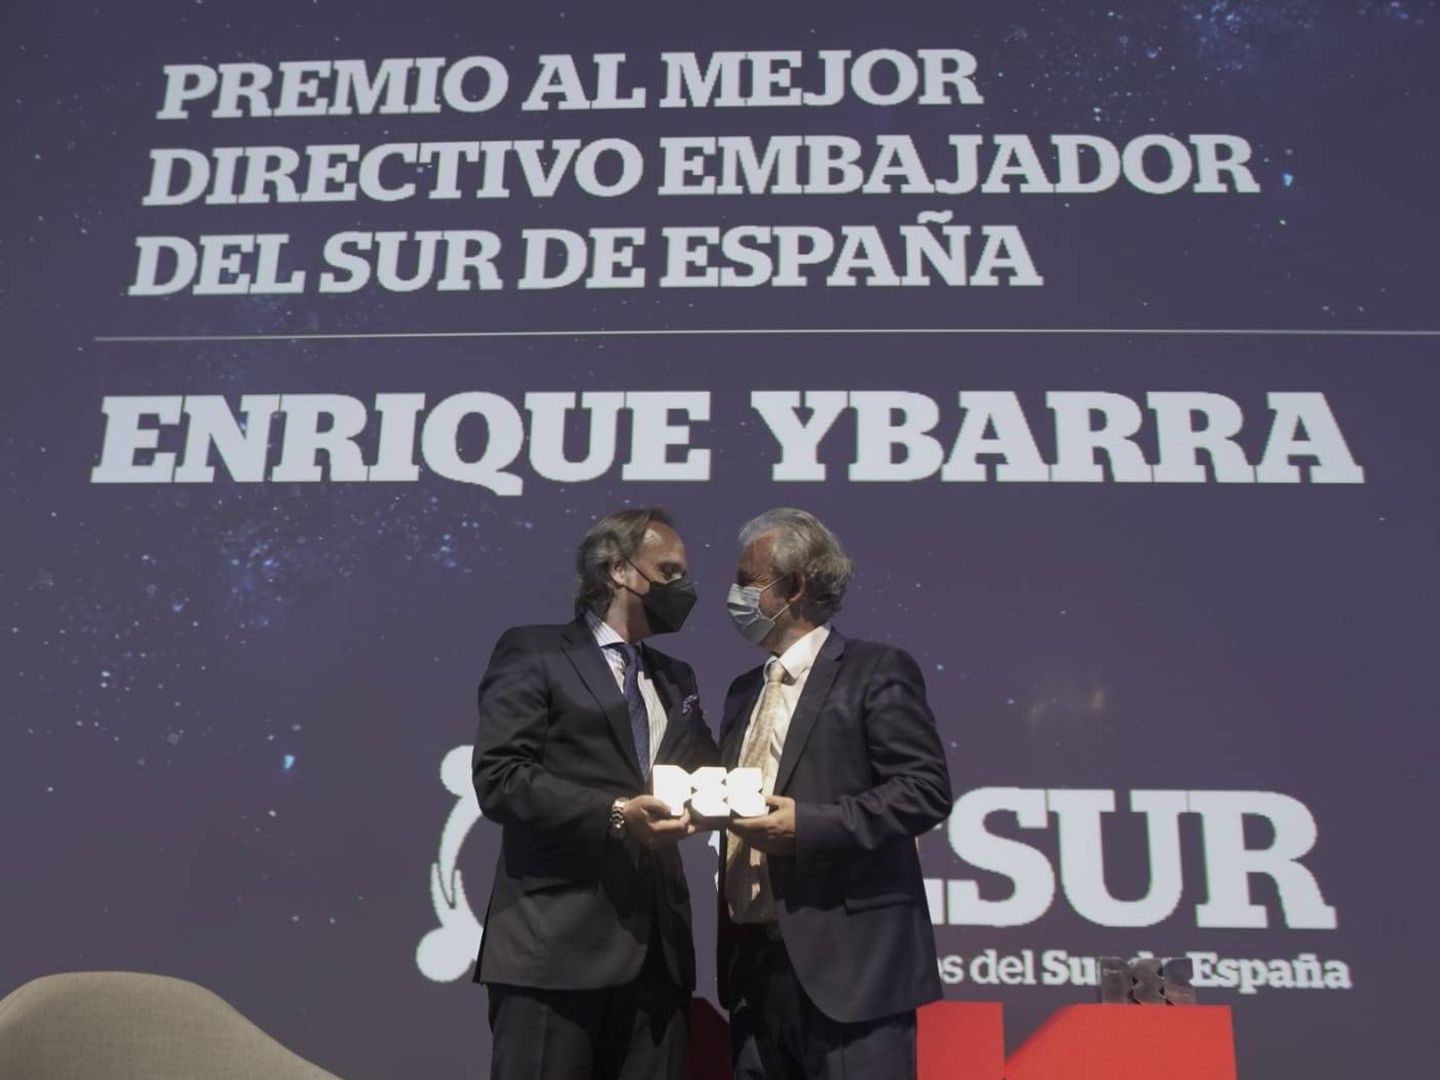 Premio a Enrique Ybarra (Citysightseeing).